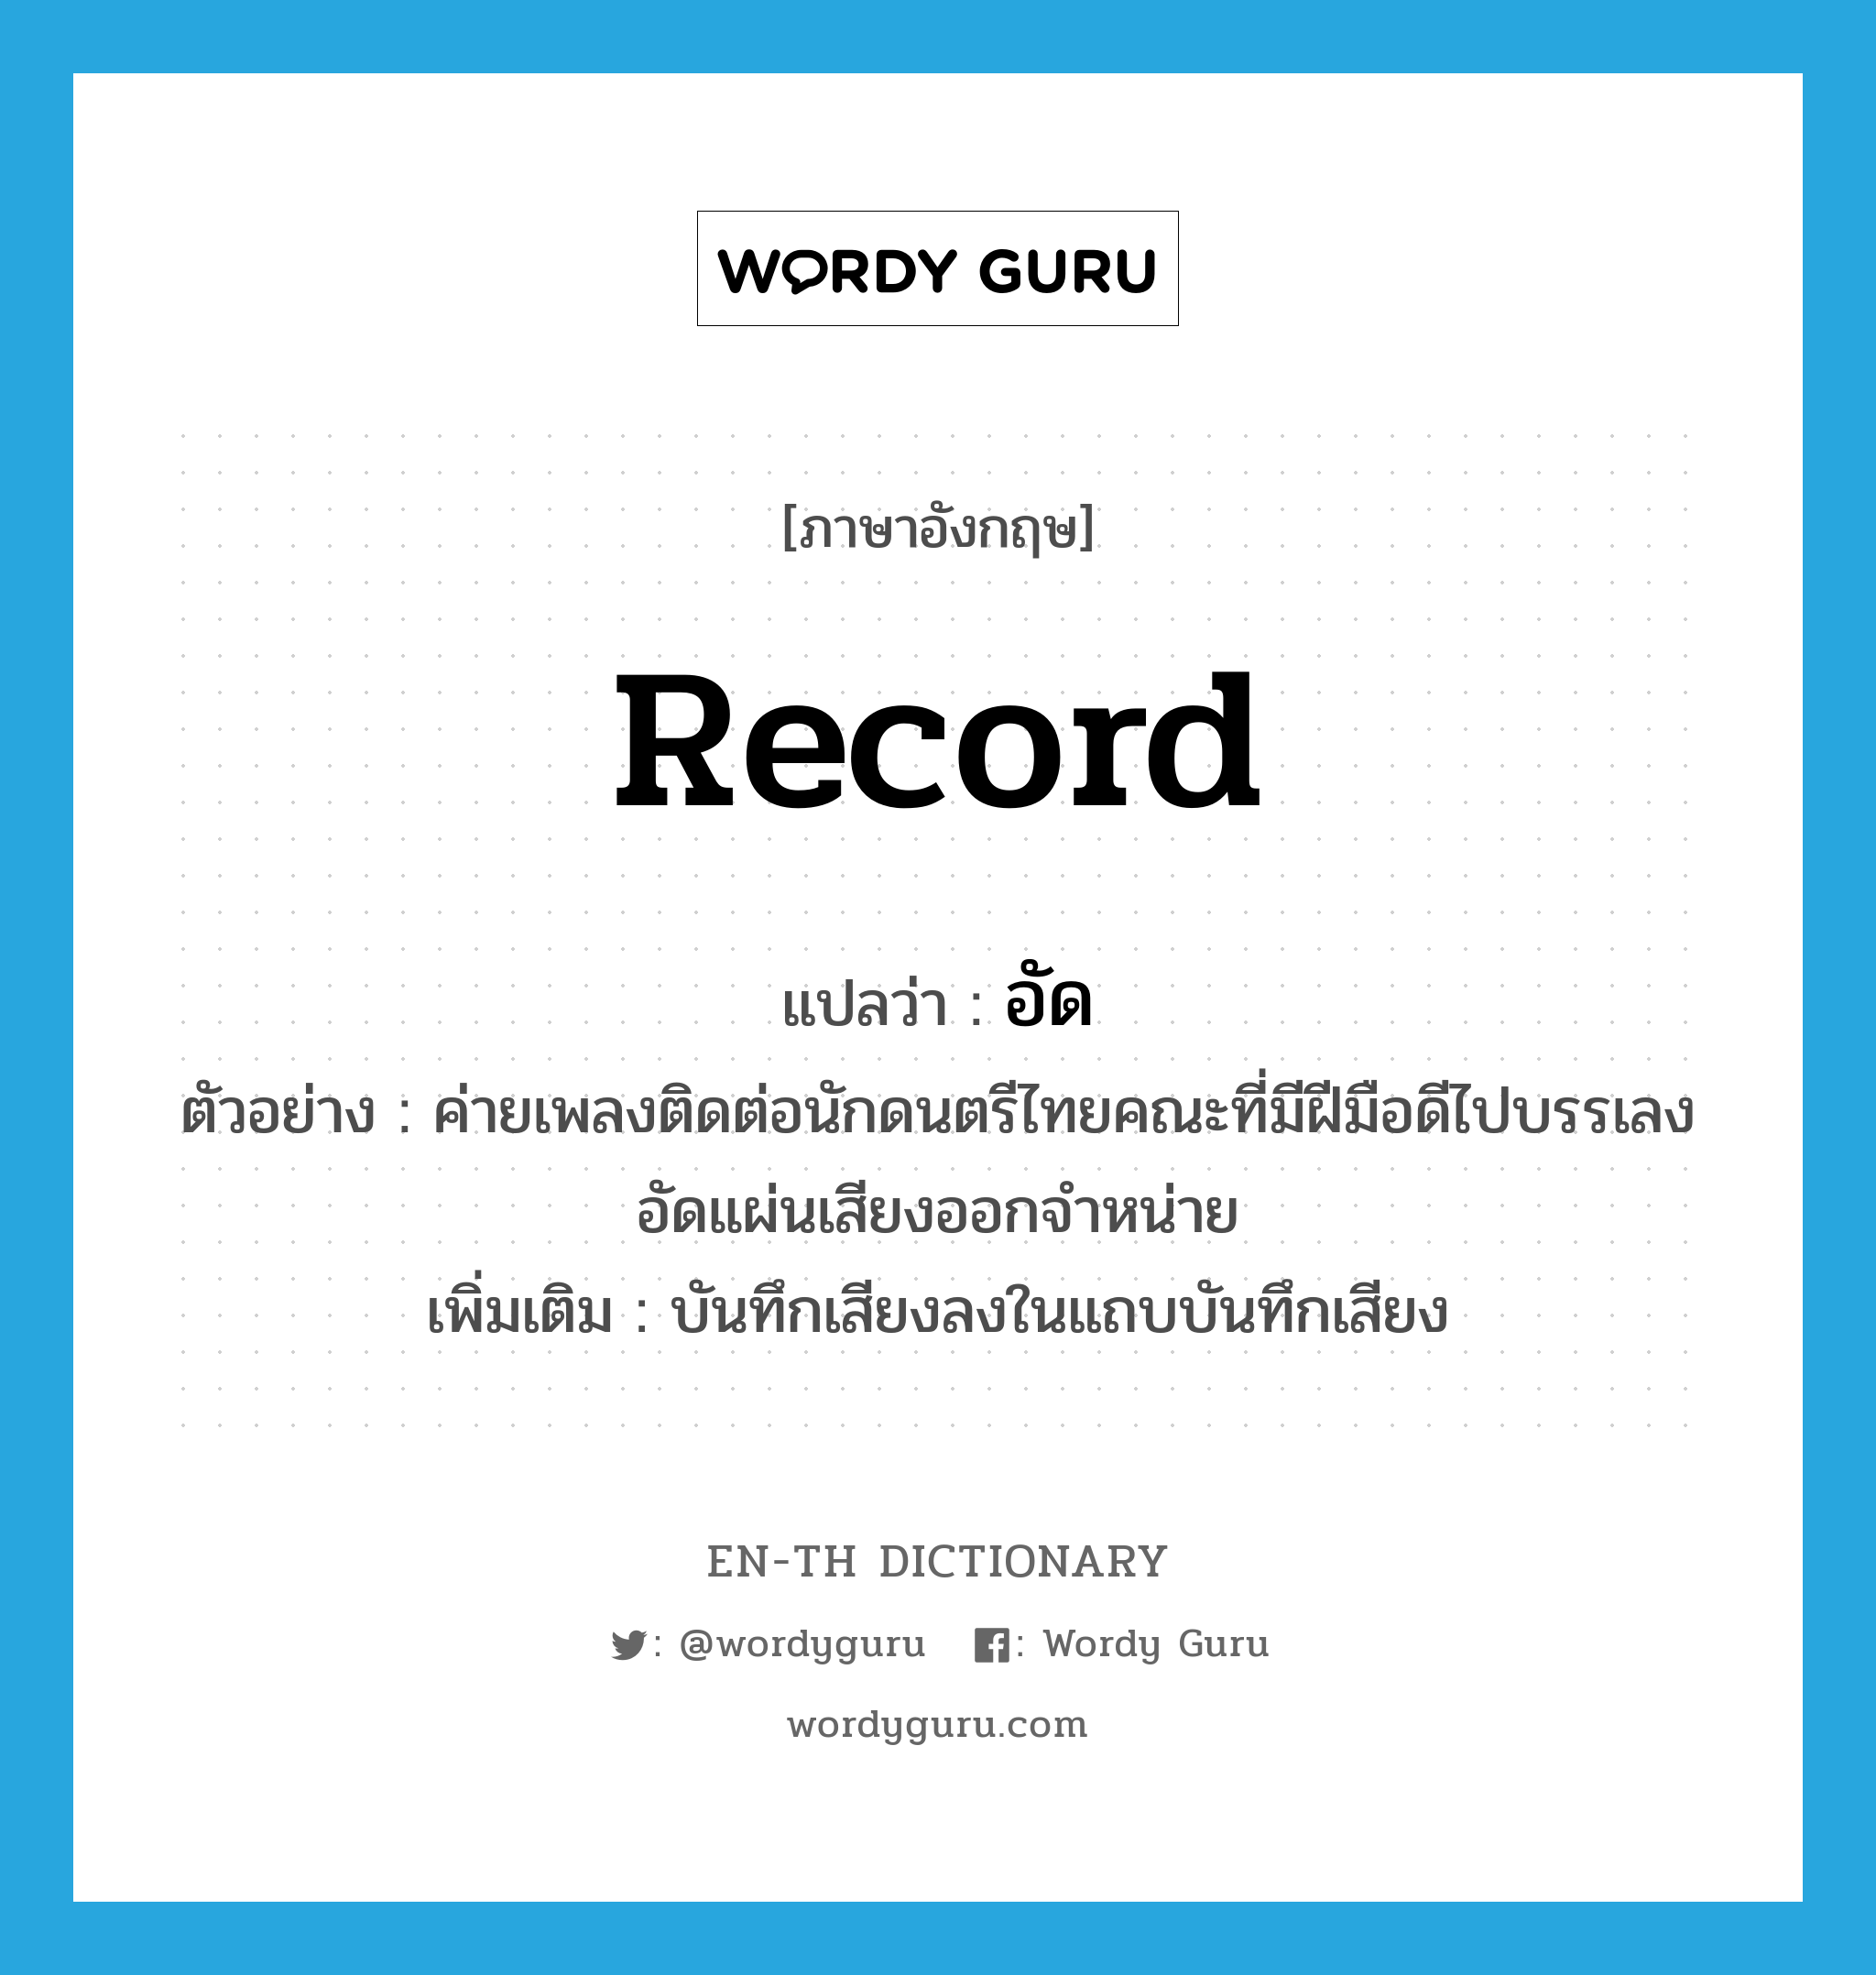 record แปลว่า?, คำศัพท์ภาษาอังกฤษ record แปลว่า อัด ประเภท V ตัวอย่าง ค่ายเพลงติดต่อนักดนตรีไทยคณะที่มีฝีมือดีไปบรรเลงอัดแผ่นเสียงออกจำหน่าย เพิ่มเติม บันทึกเสียงลงในแถบบันทึกเสียง หมวด V